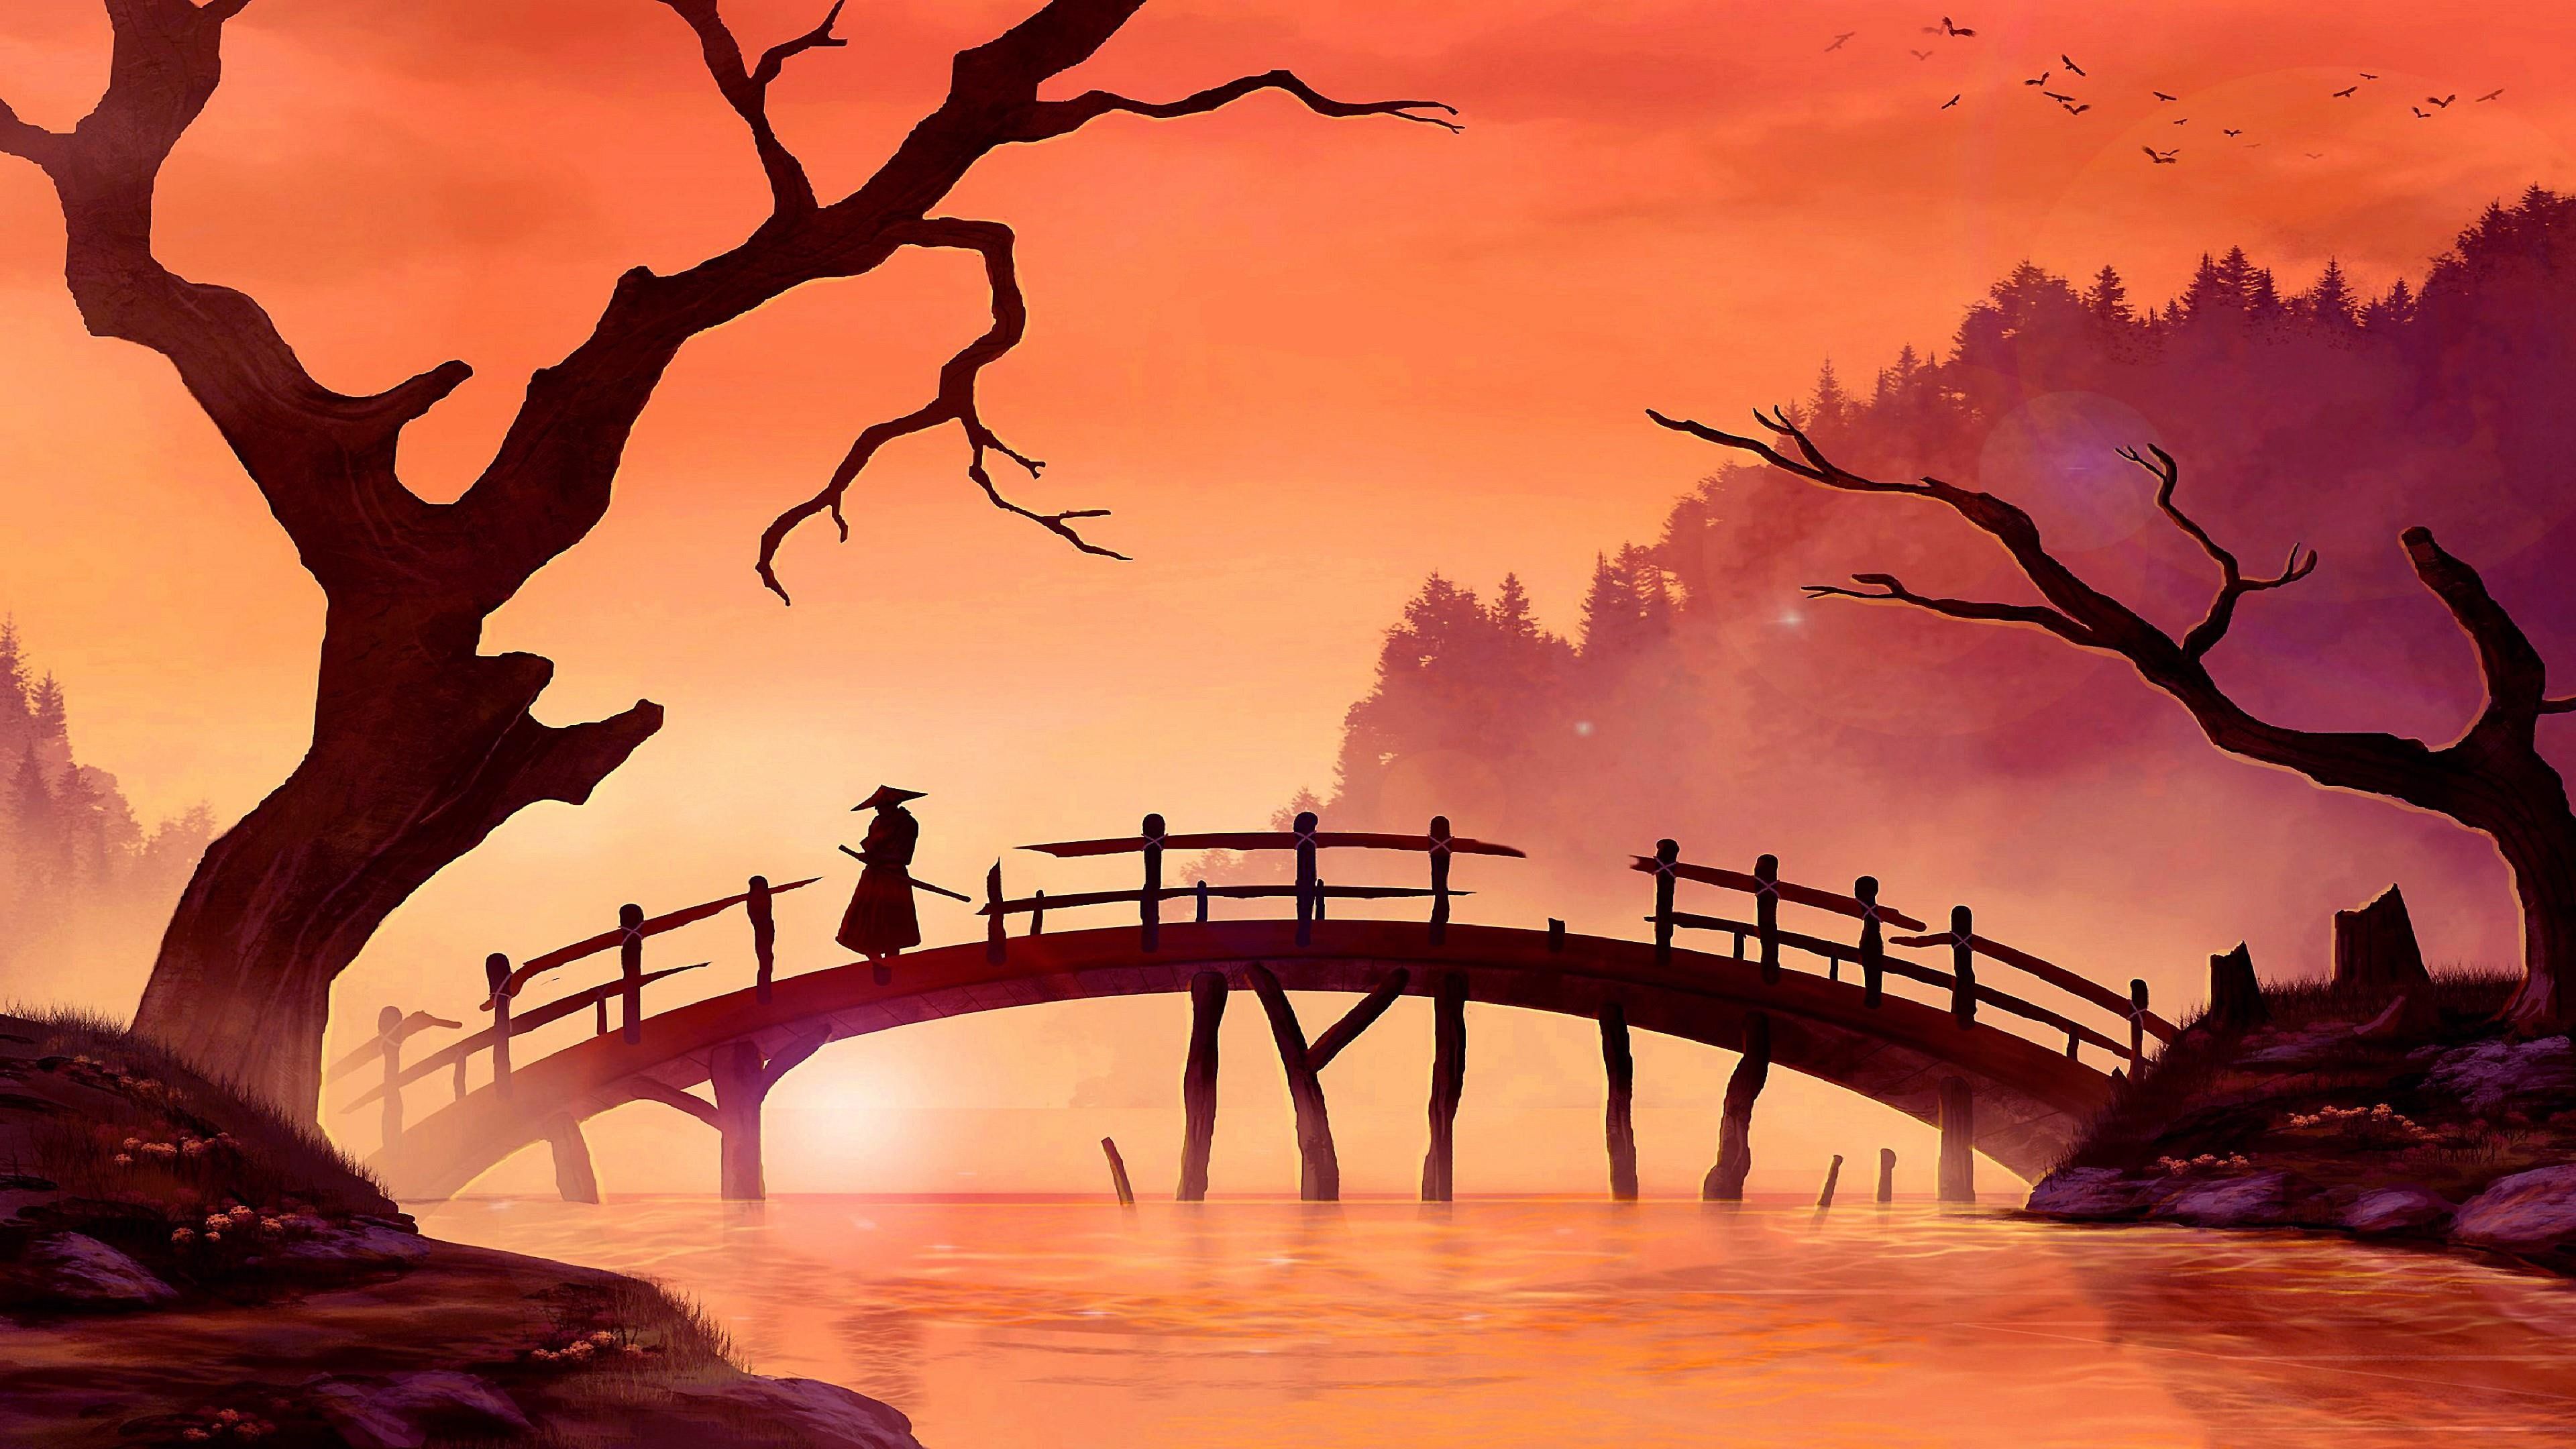 Samurai, bridge, painting art, sunset, river, landscape, branch. Forest painting, Nature art, Japanese landscape